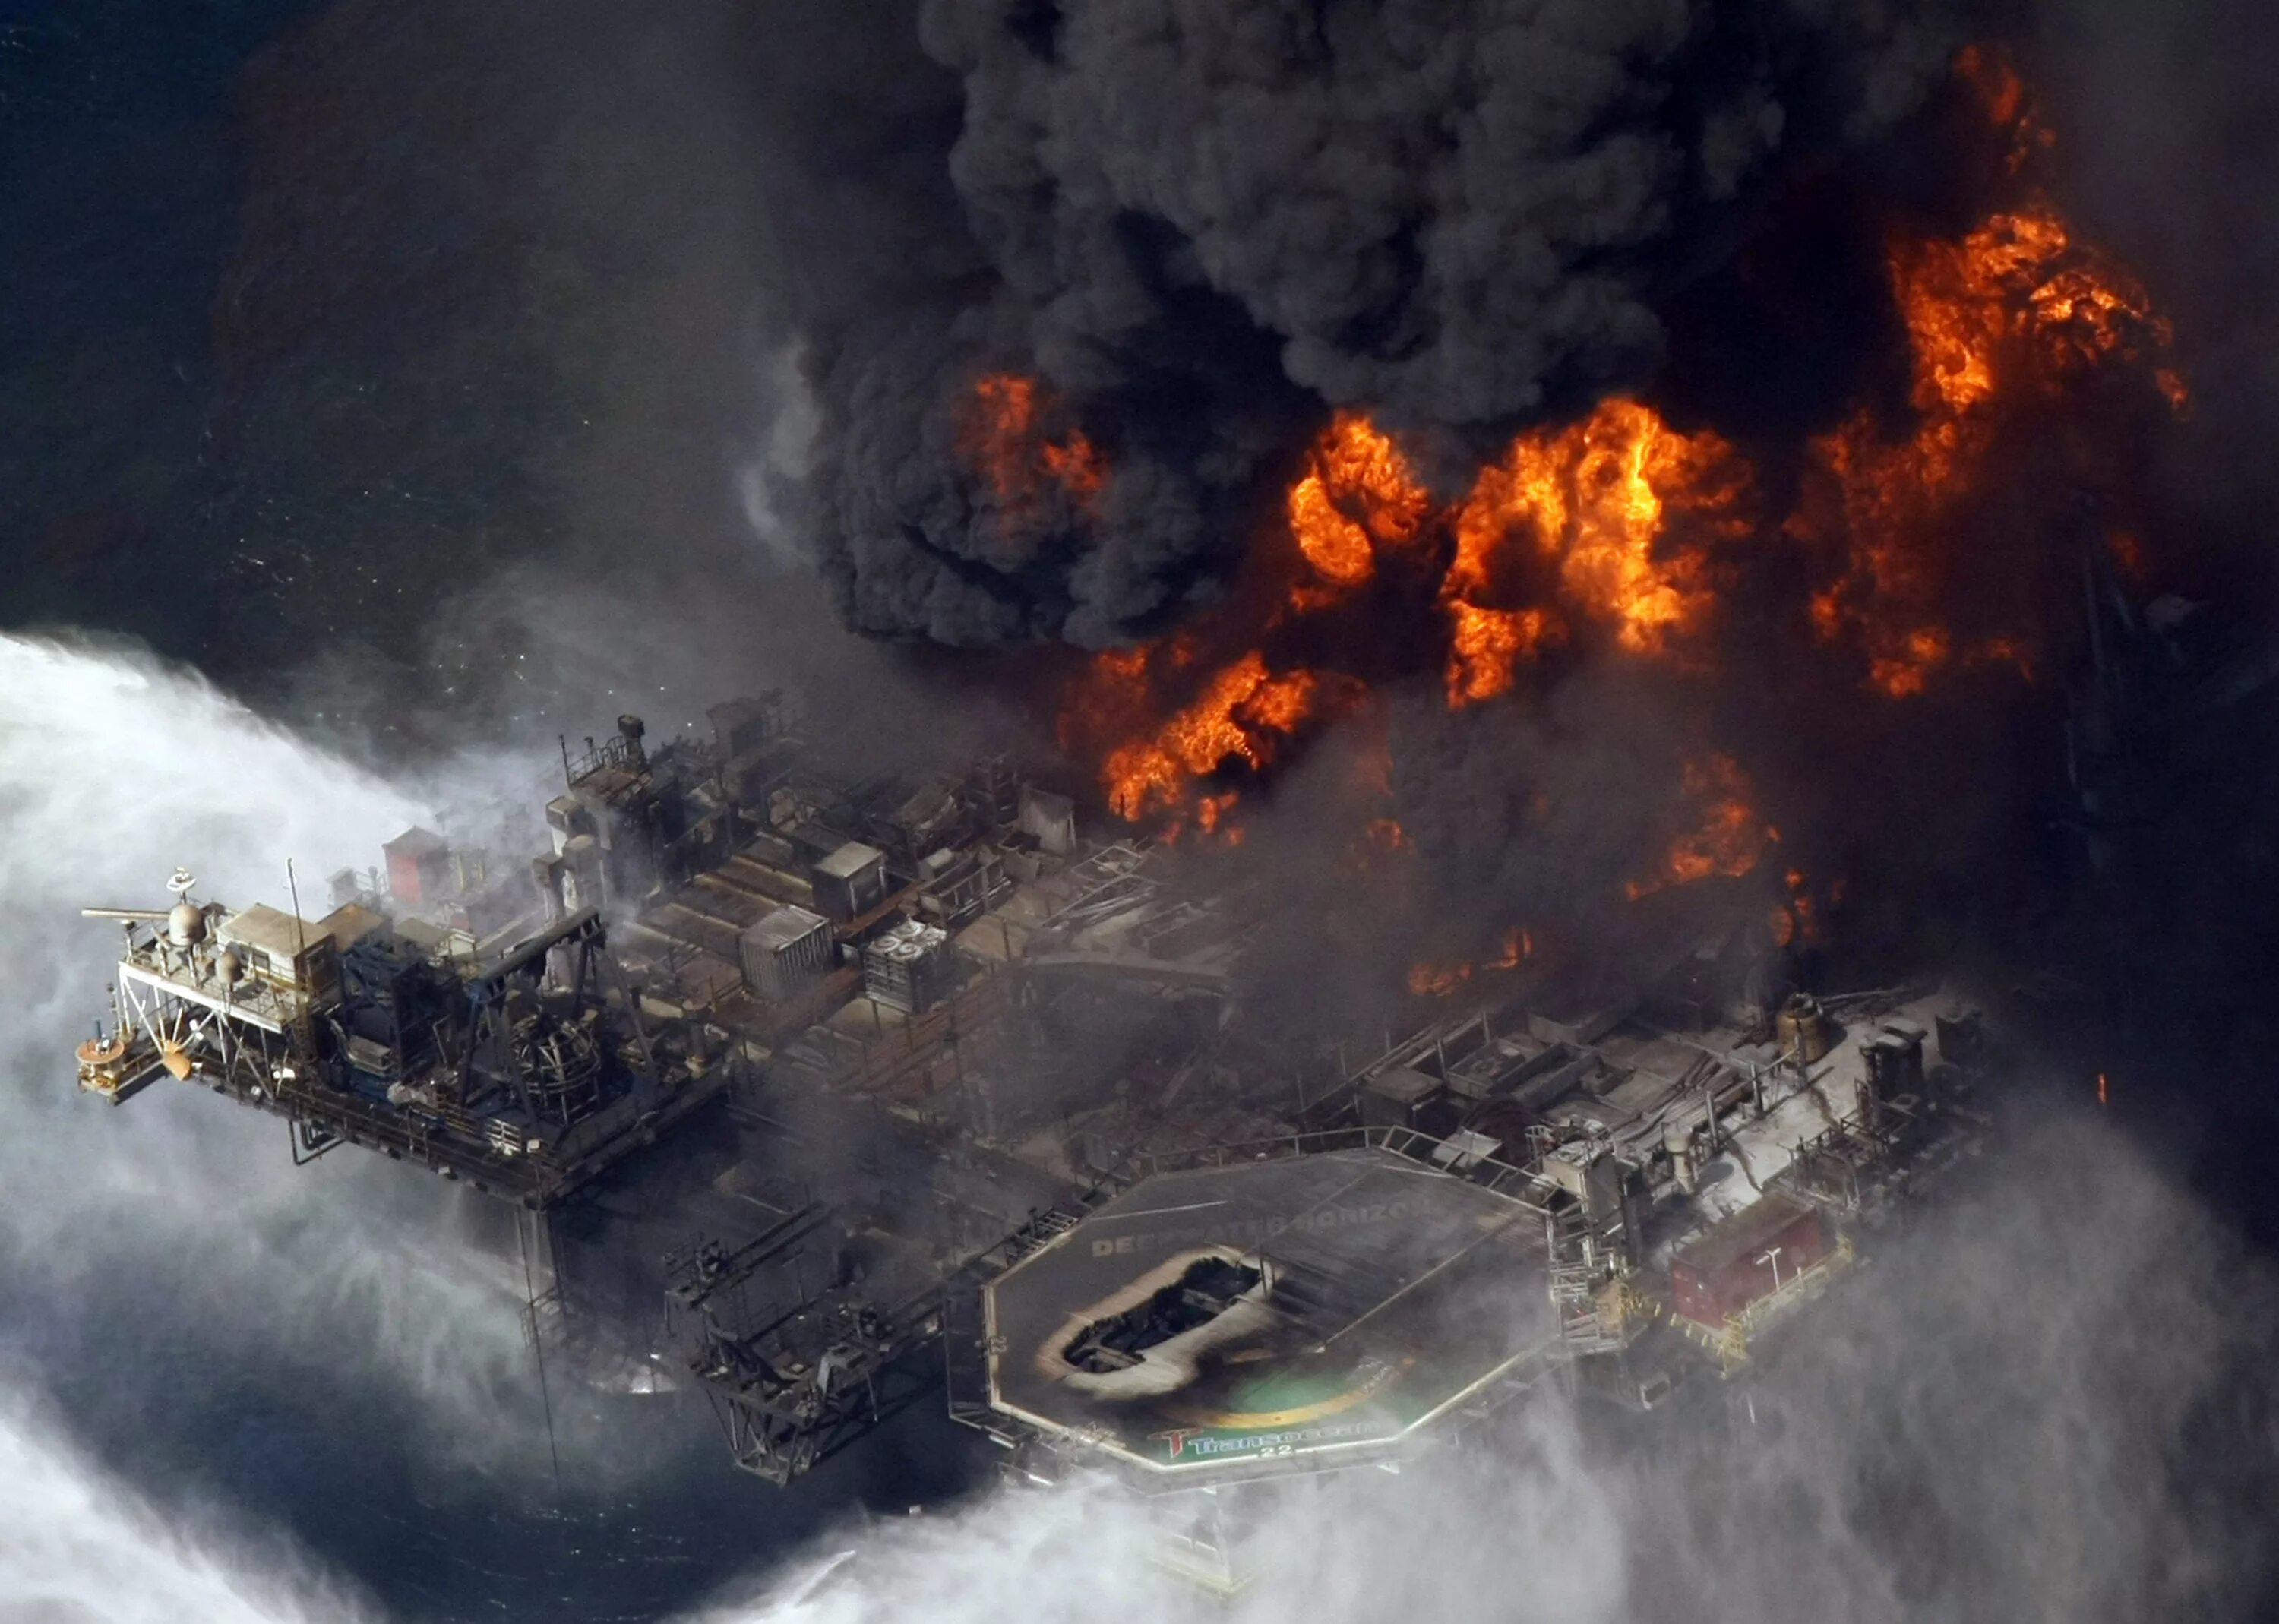 Грозящая катастрофа. Взрыв в мексиканском заливе авария на нефтяной платформе Deepwater Horizon. Взрыв нефтяной платформы Deepwater Horizon - 20 апреля 2010 года. Катастрофа Deepwater Horizon в мексиканском заливе. Взрыв нефтяной платформы Deepwater Horizon в мексиканском заливе 2010.